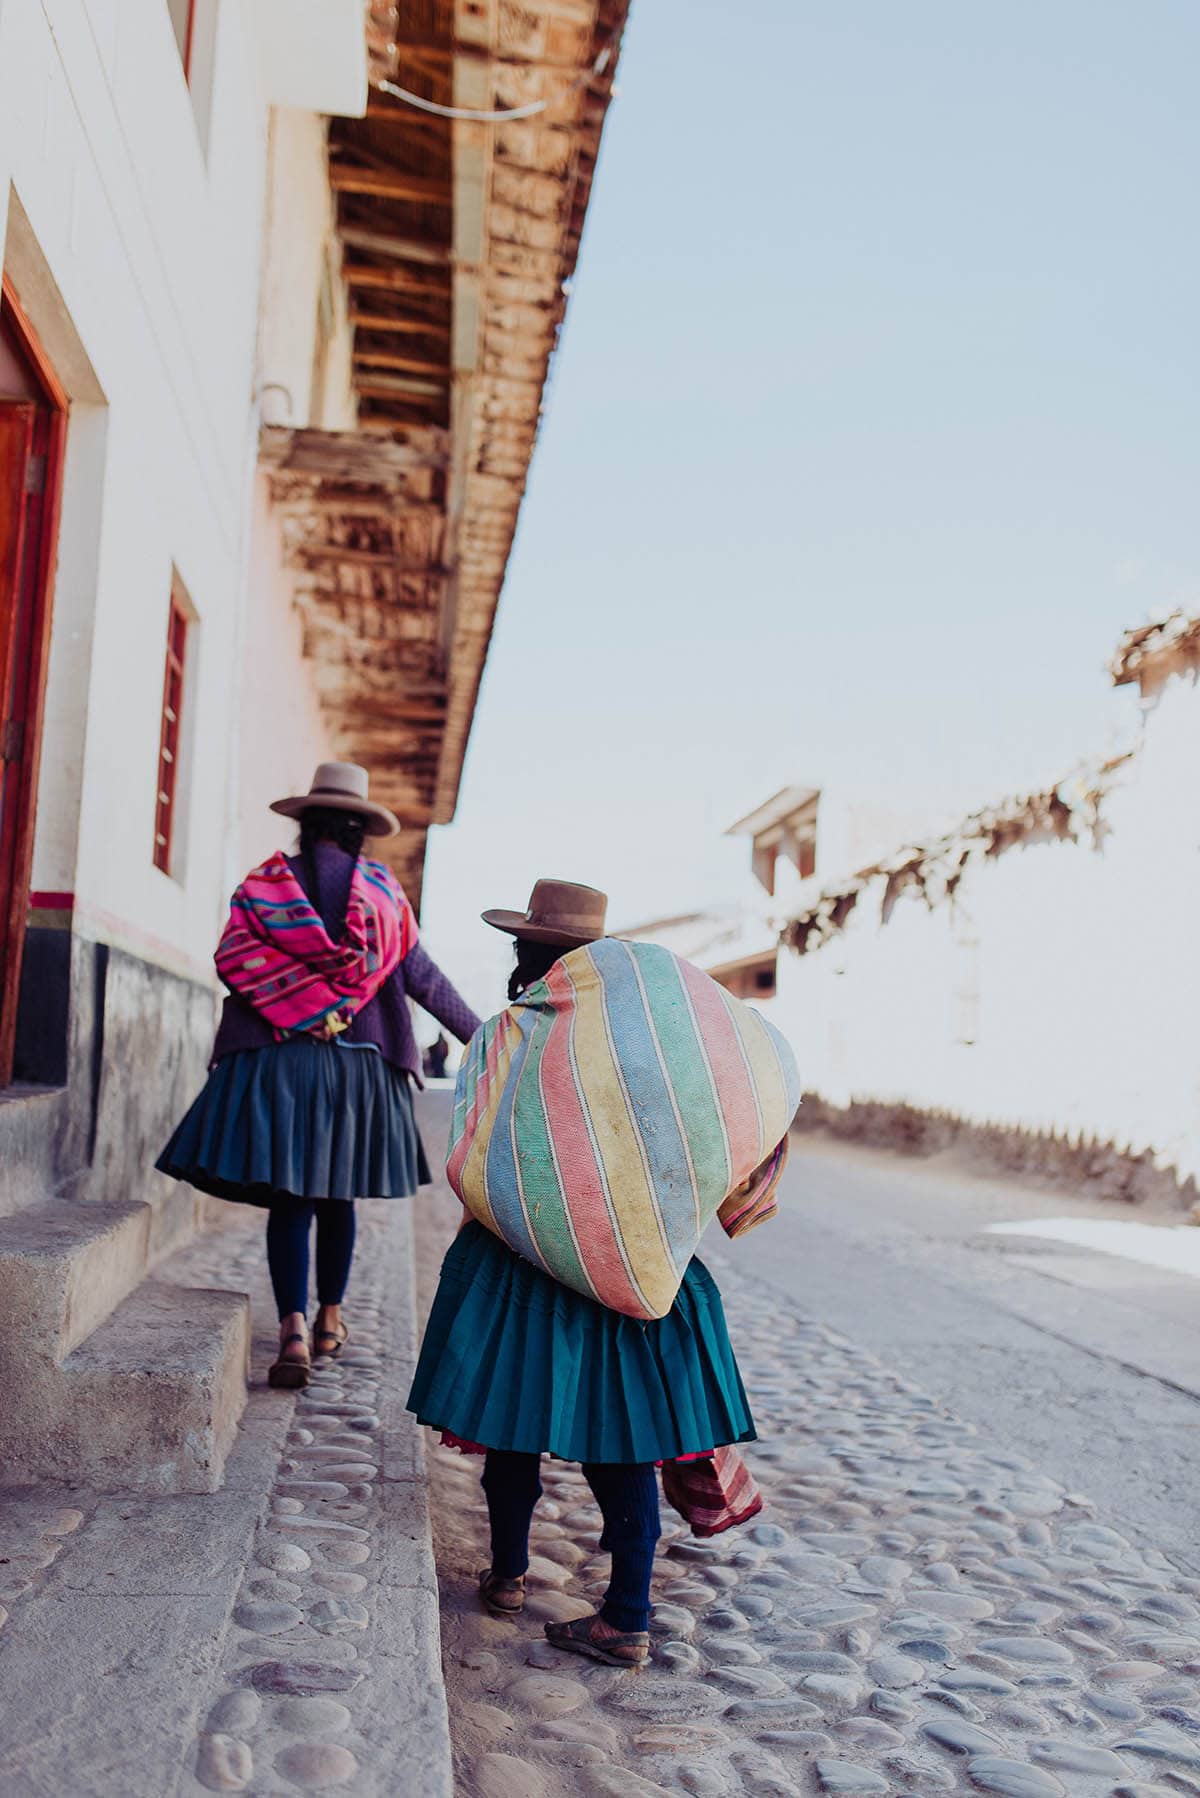 Andean women walk down a cobblestone street in Peru